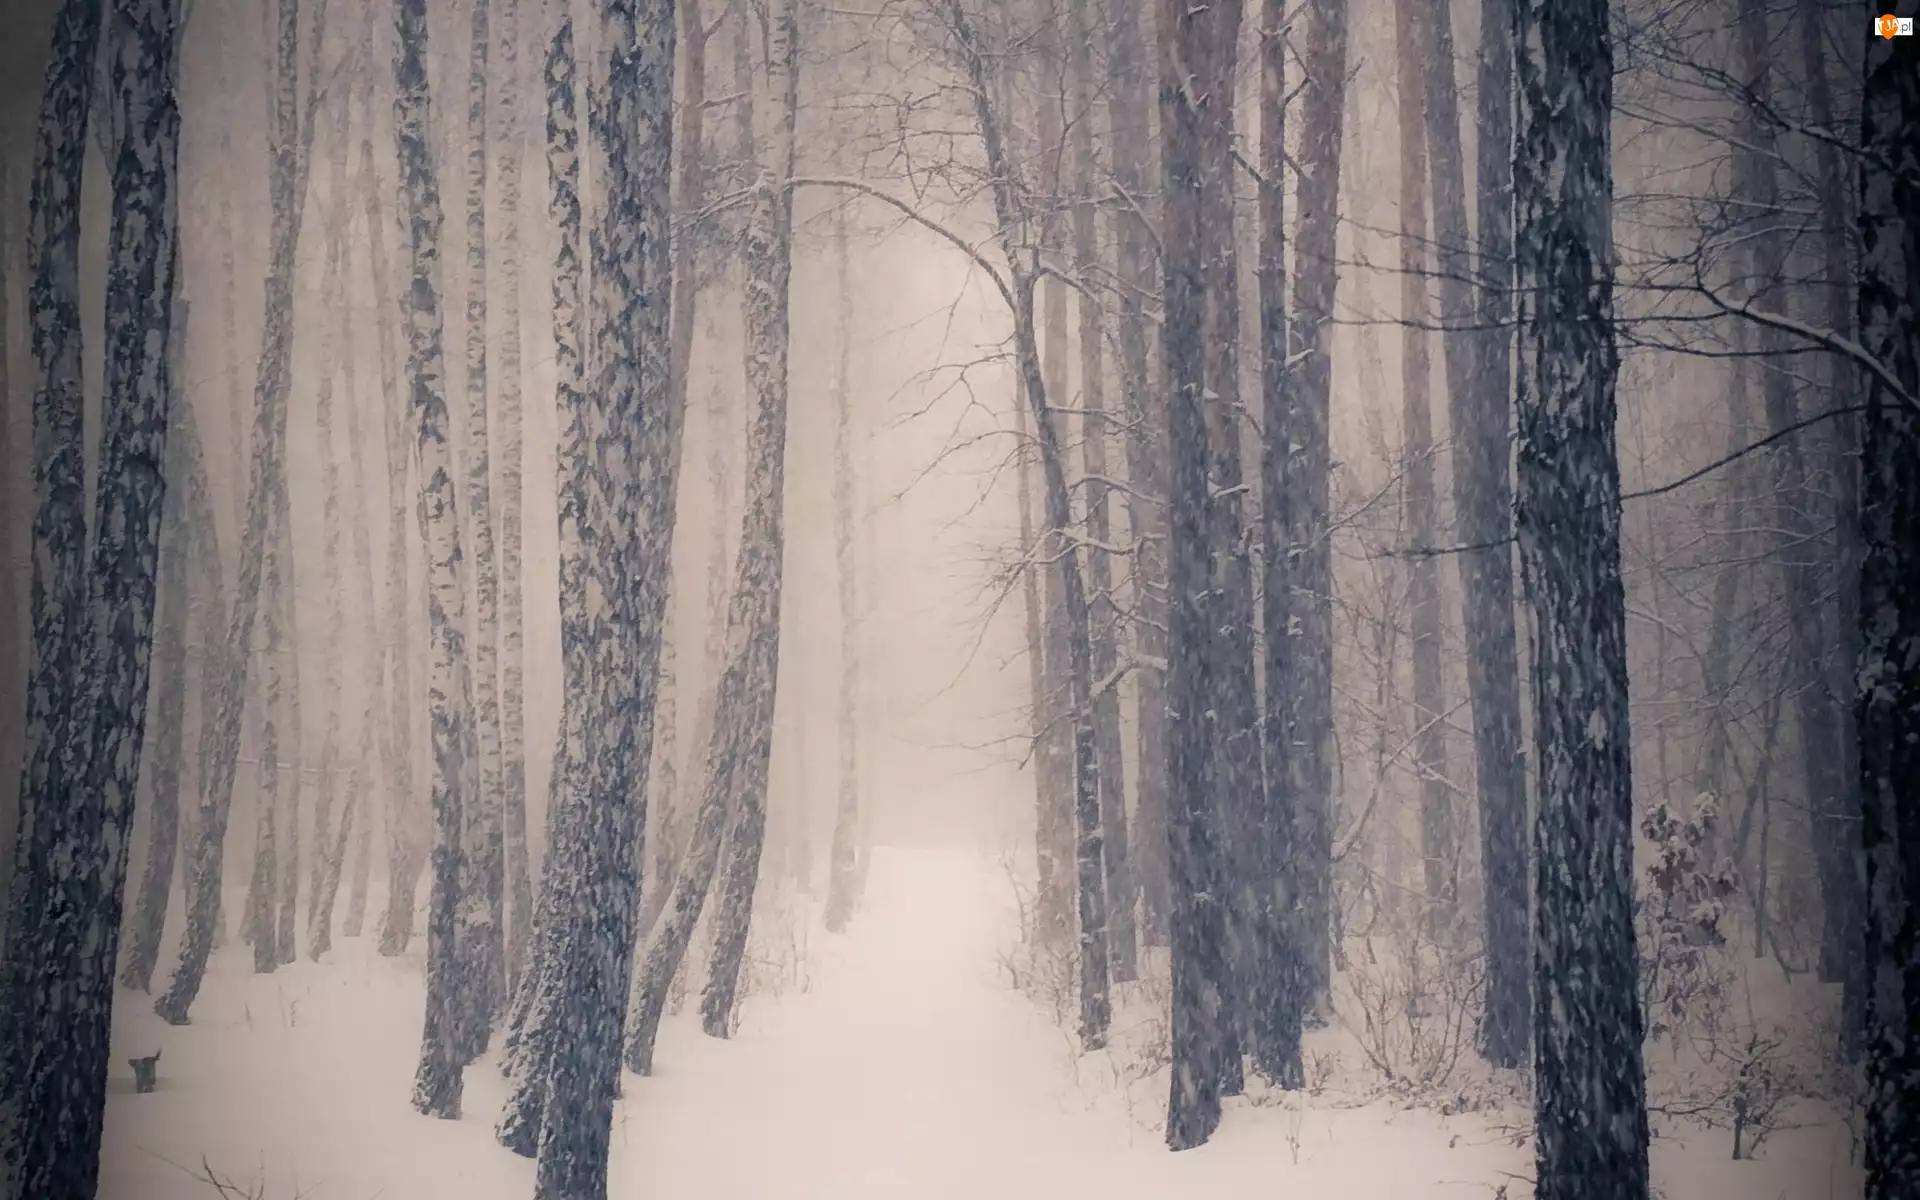 Zima, Drzewa, Śnieg, Las